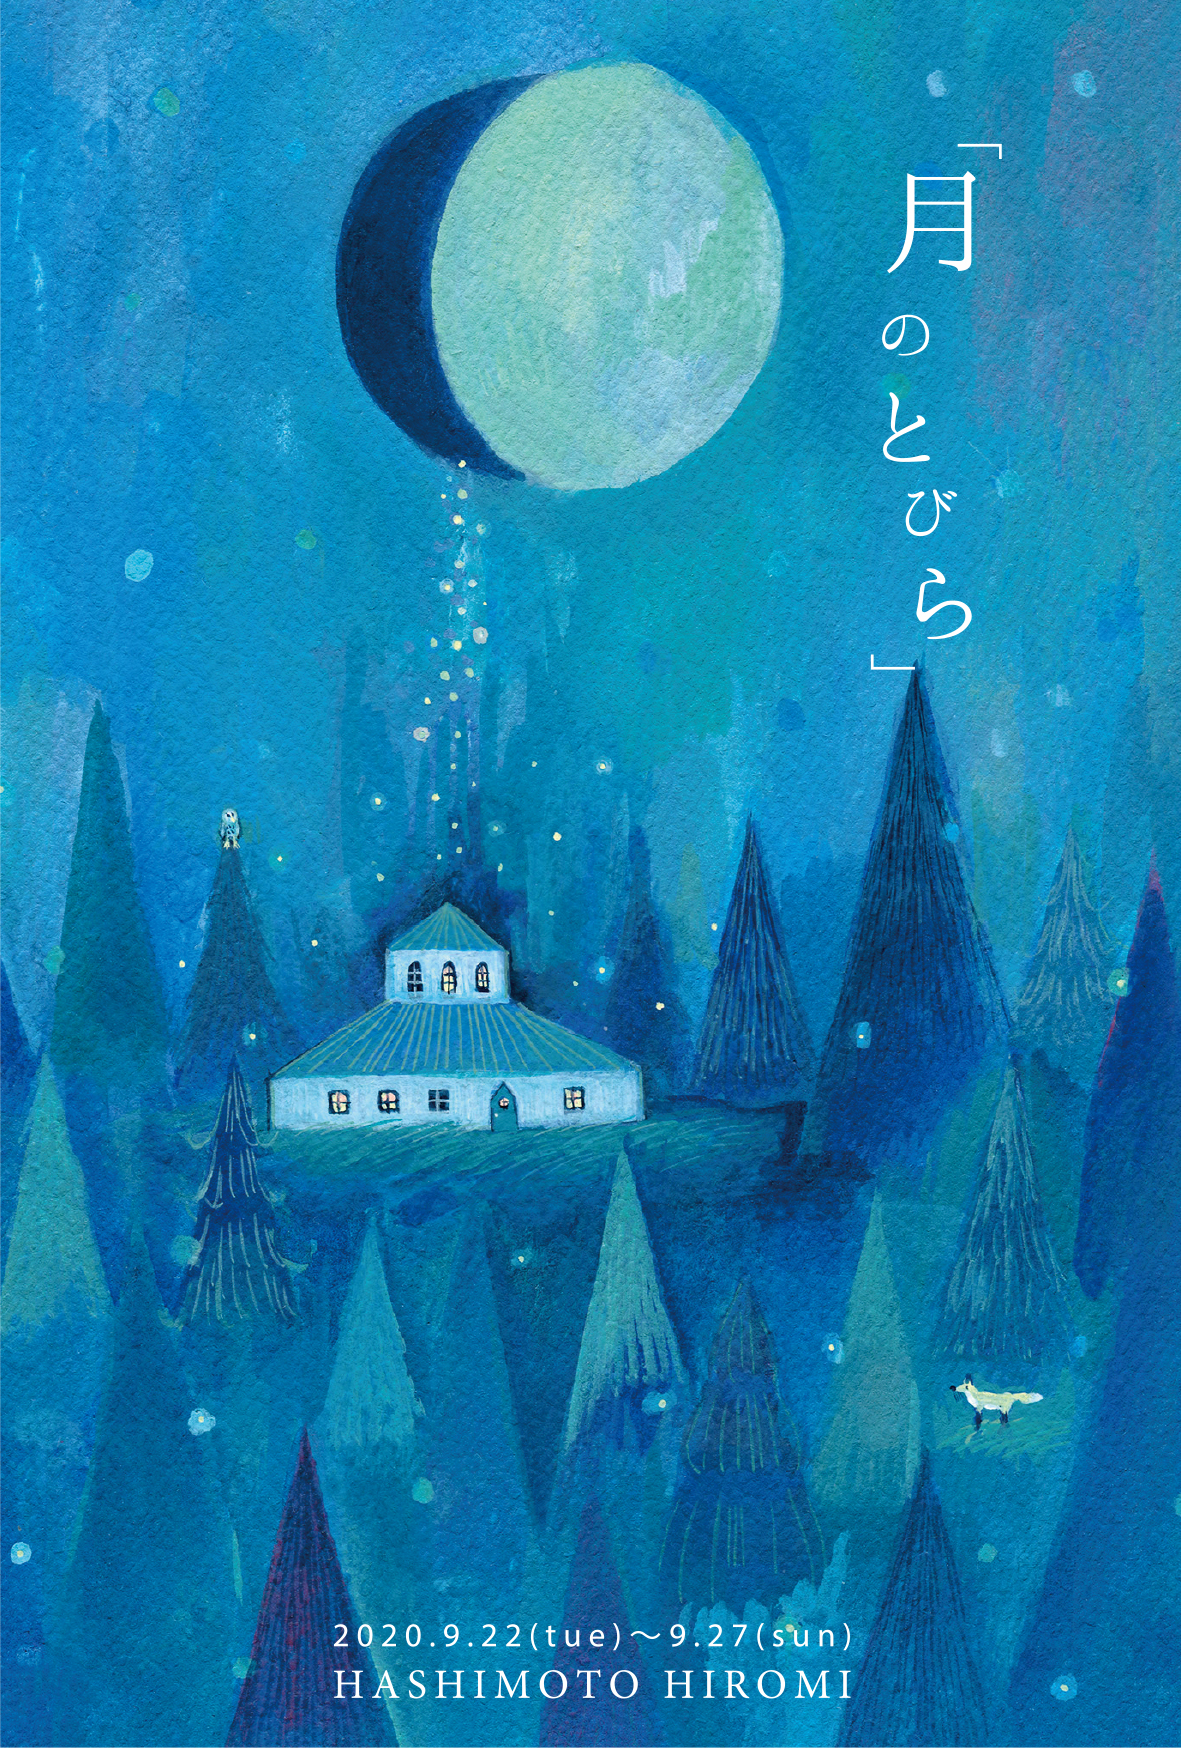 【期間限定】HASHIMOTO HIROMI 個展「月のとびら」【終了しました】